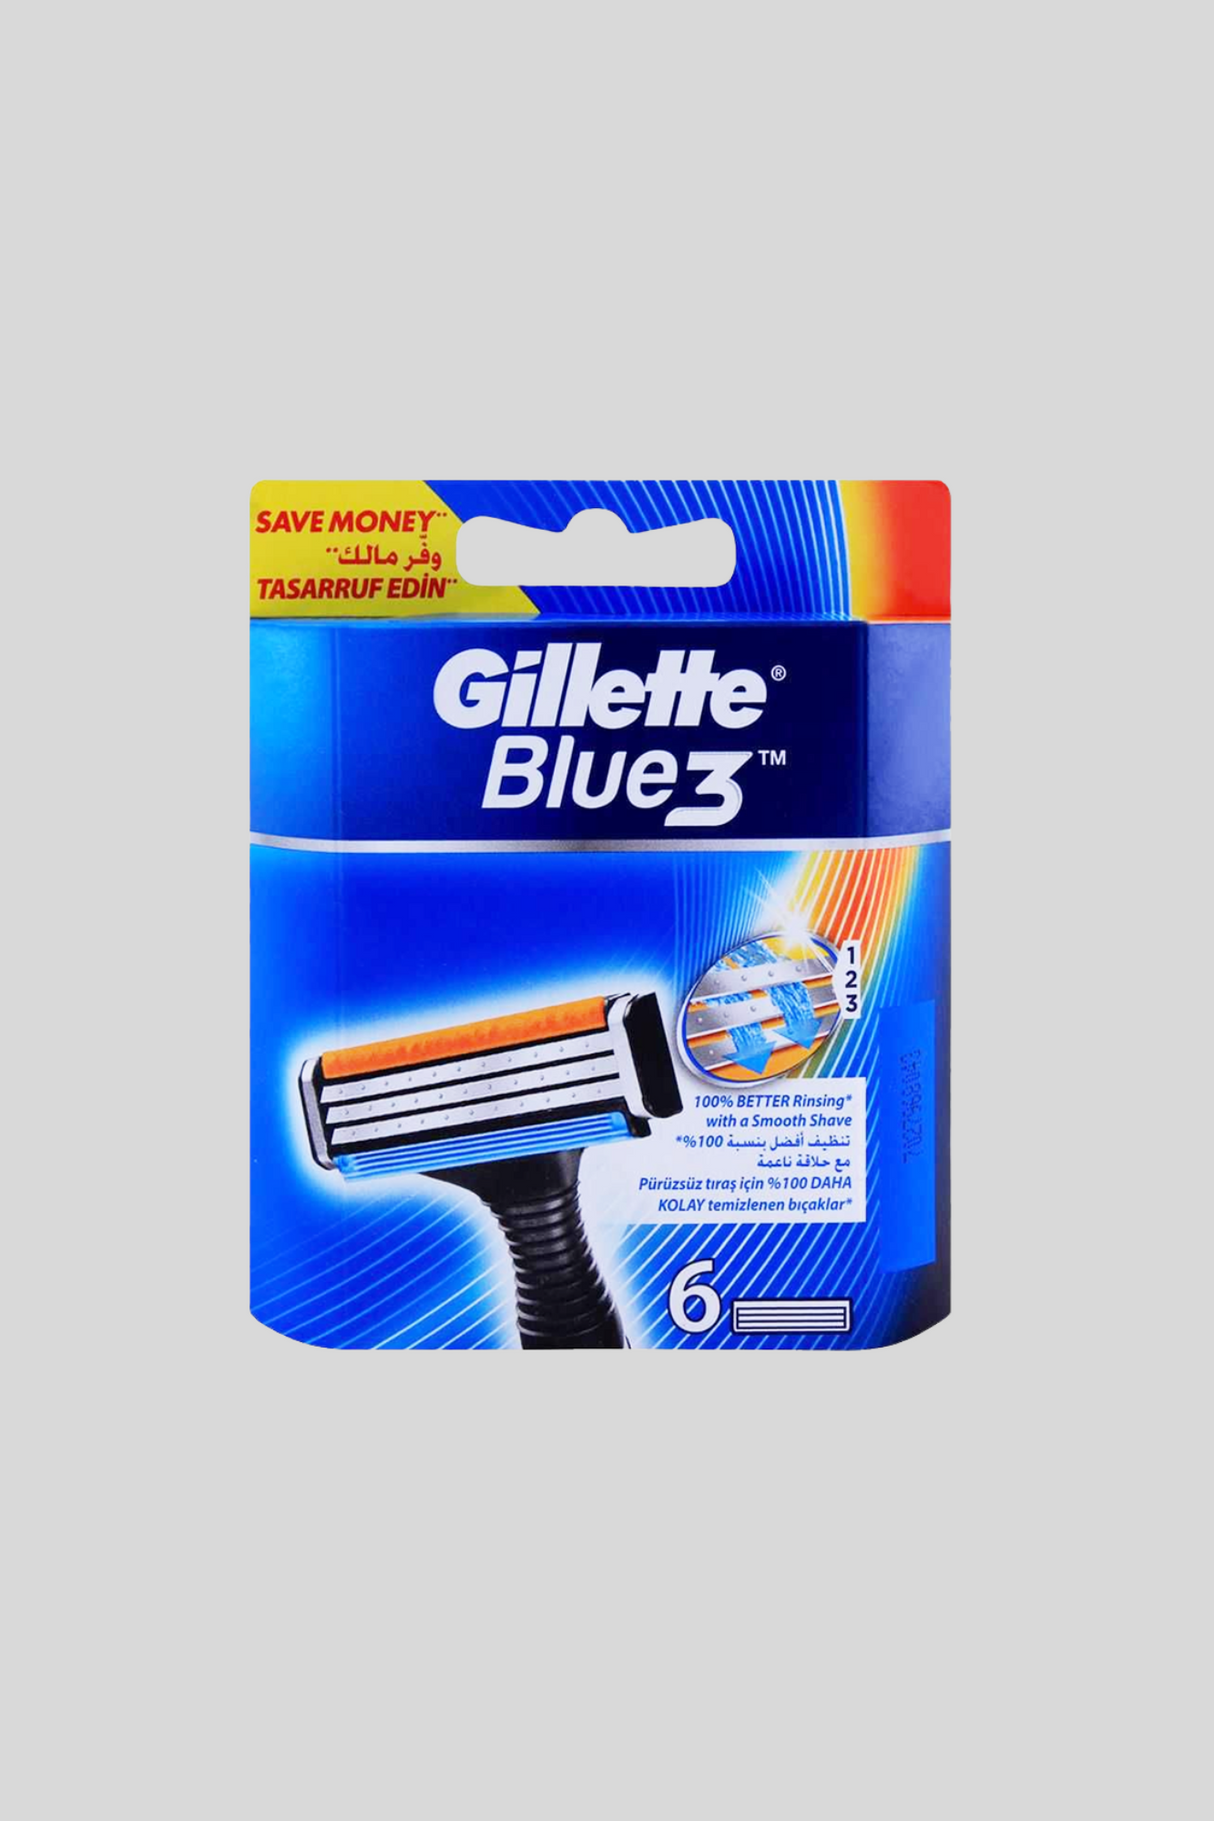 gillette blade blue3 6p